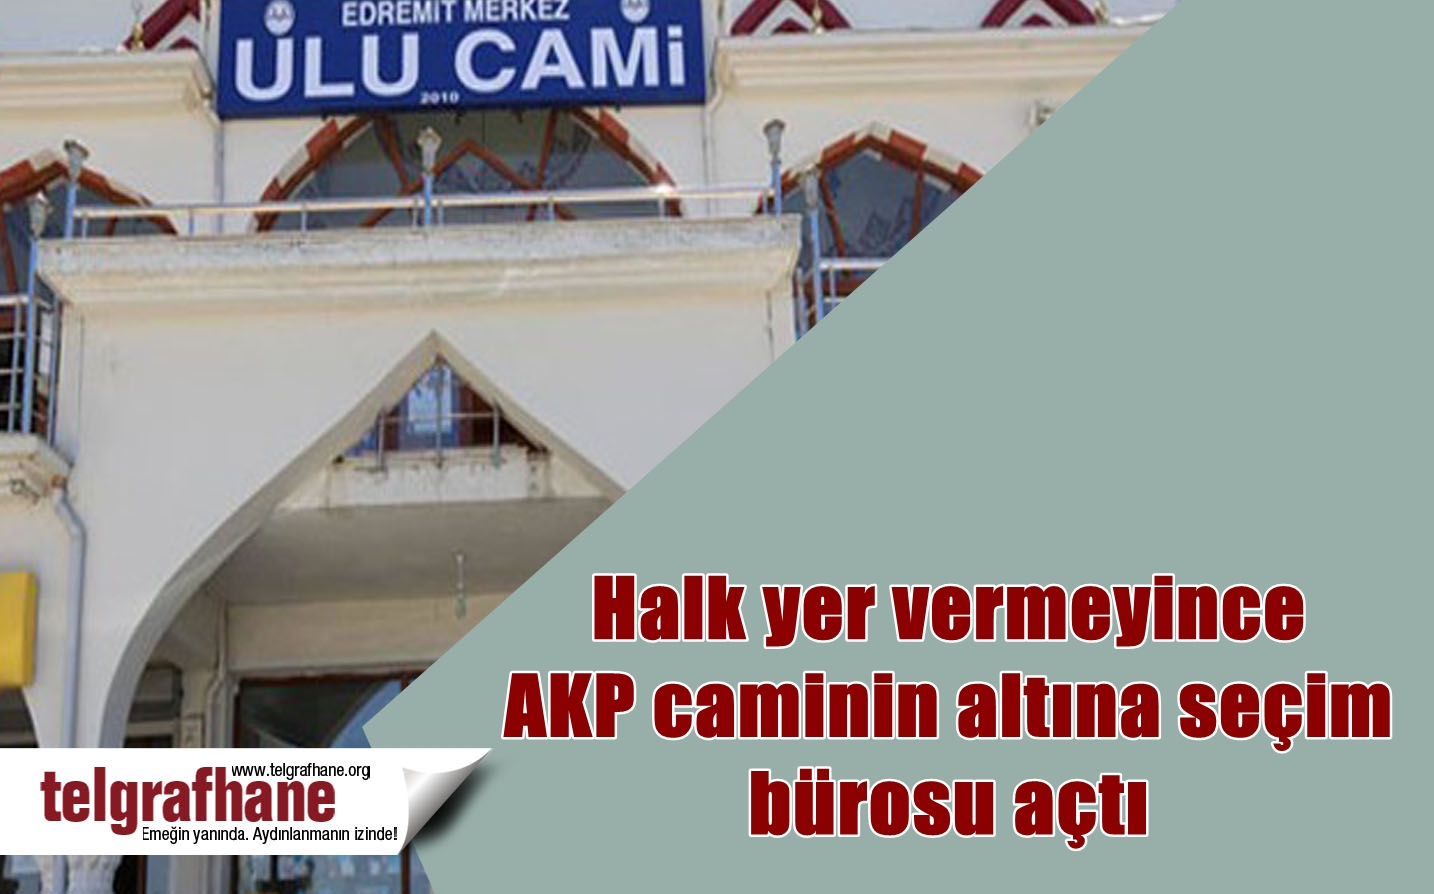 Halk yer vermeyince AKP caminin altına seçim bürosu açtı